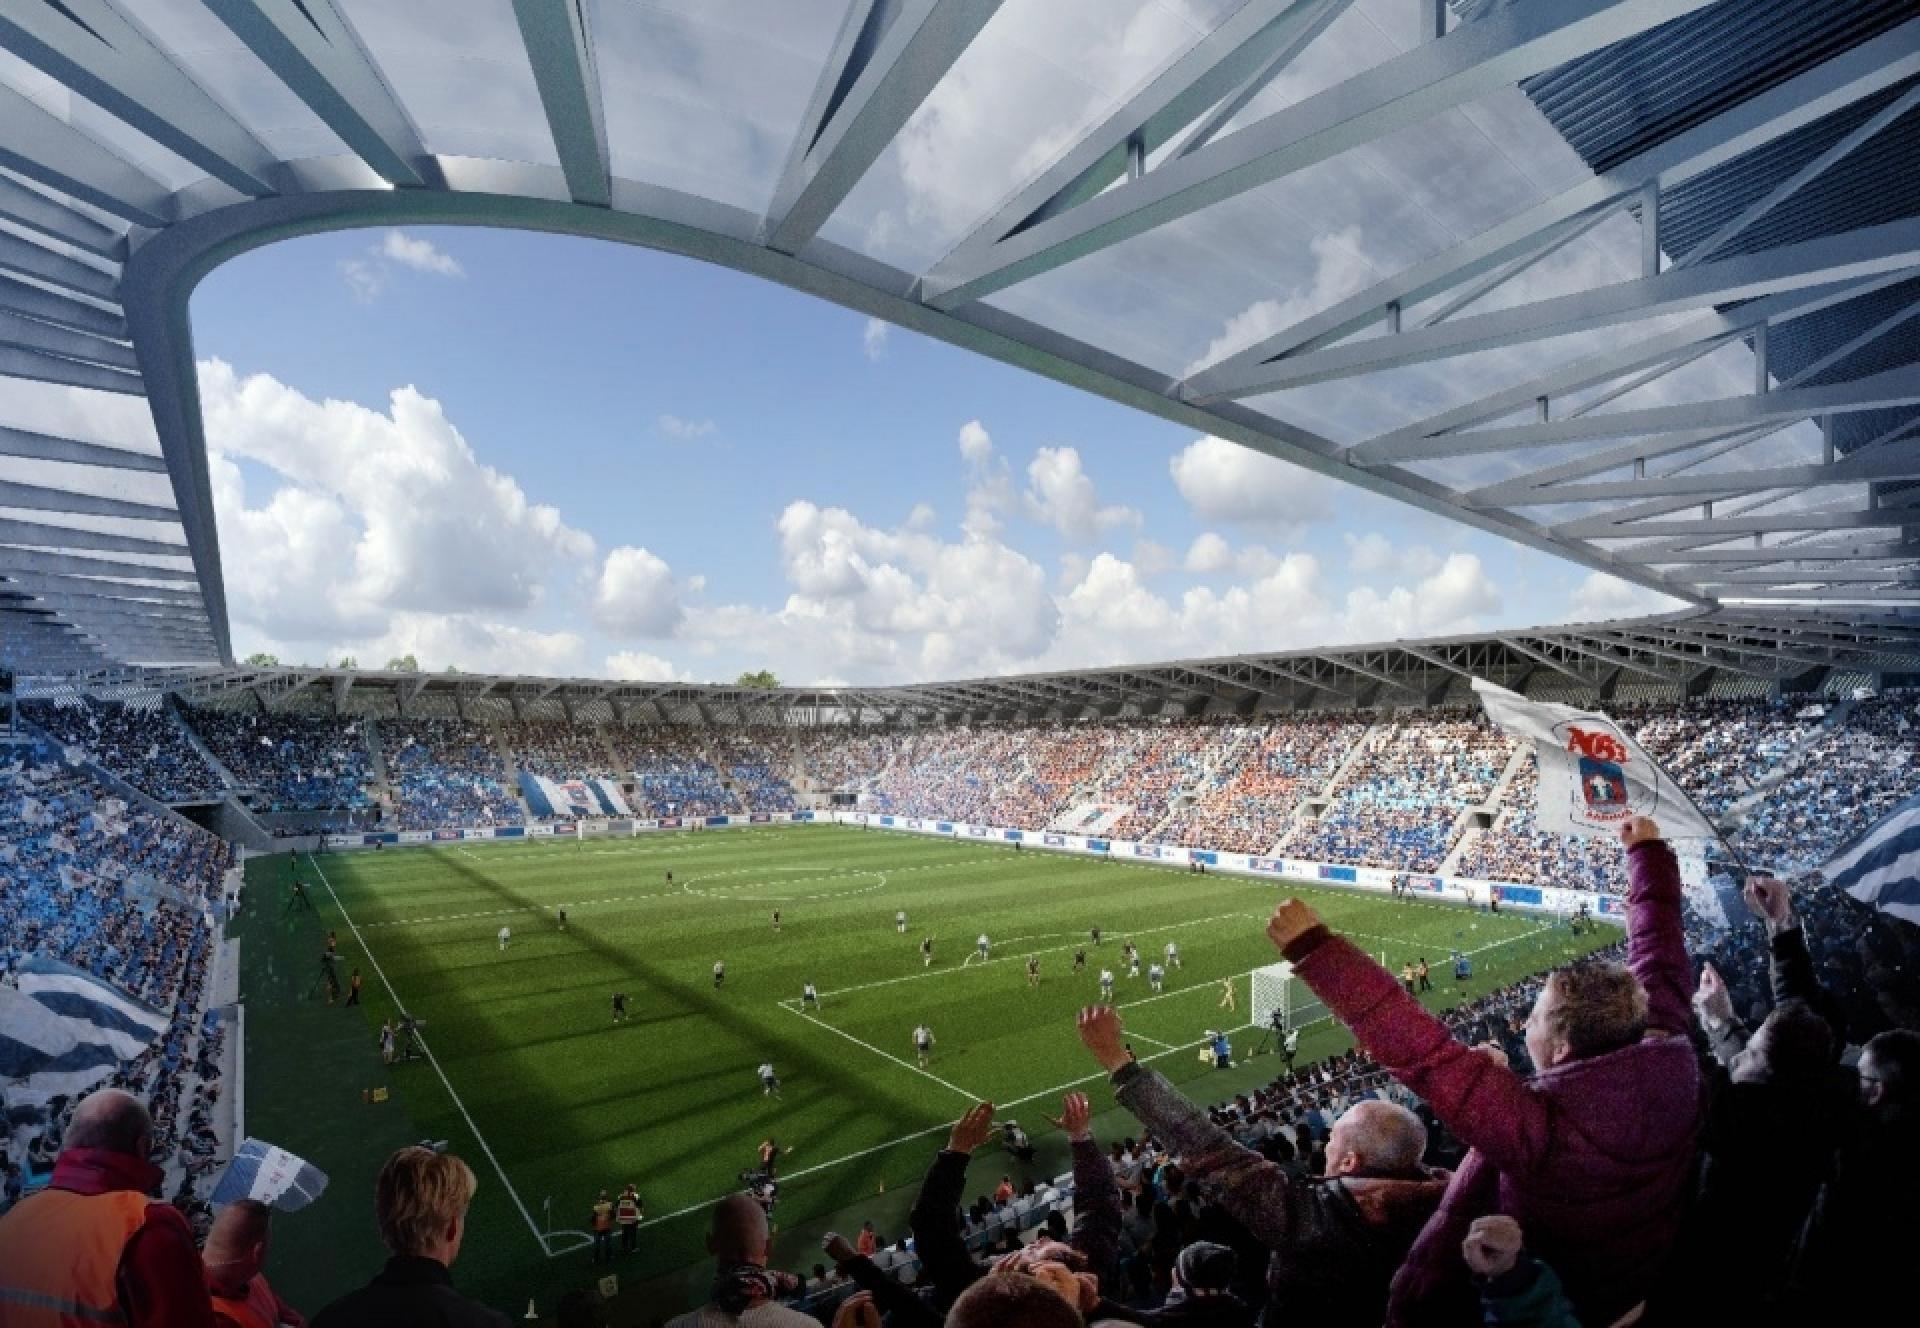 Fra midten af 2026 rykker den aarhusianske fodboldfest ind på det nye stadion. Visualisering: Zaha Hadid Architects